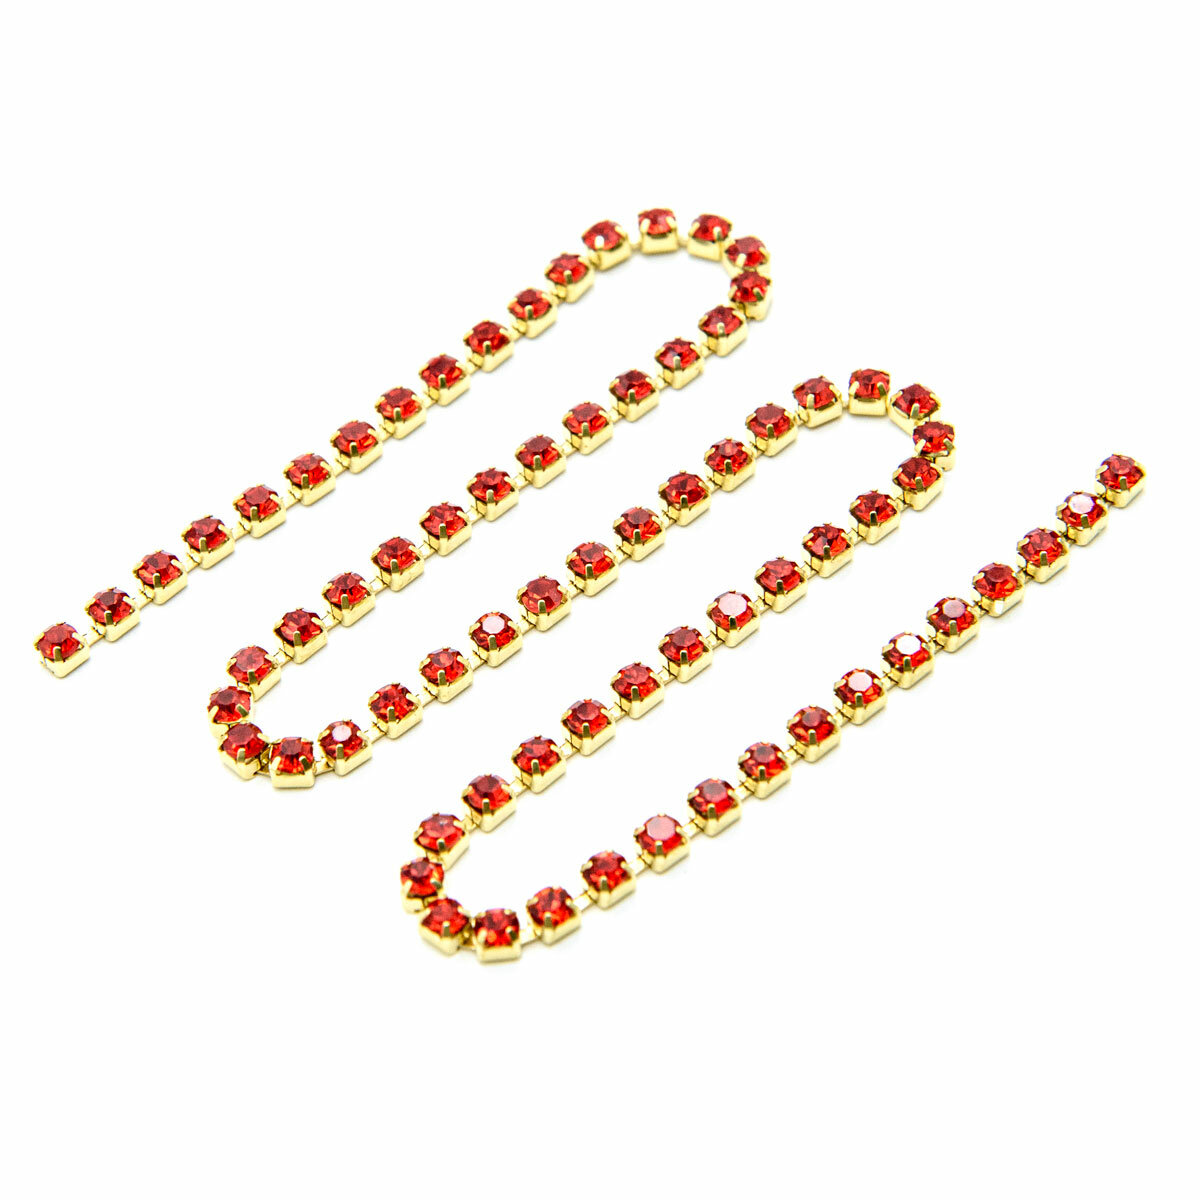 ЦС007ЗЦ3 Стразовые цепочки (золото), красный, размер 3 мм, 30 см/упак